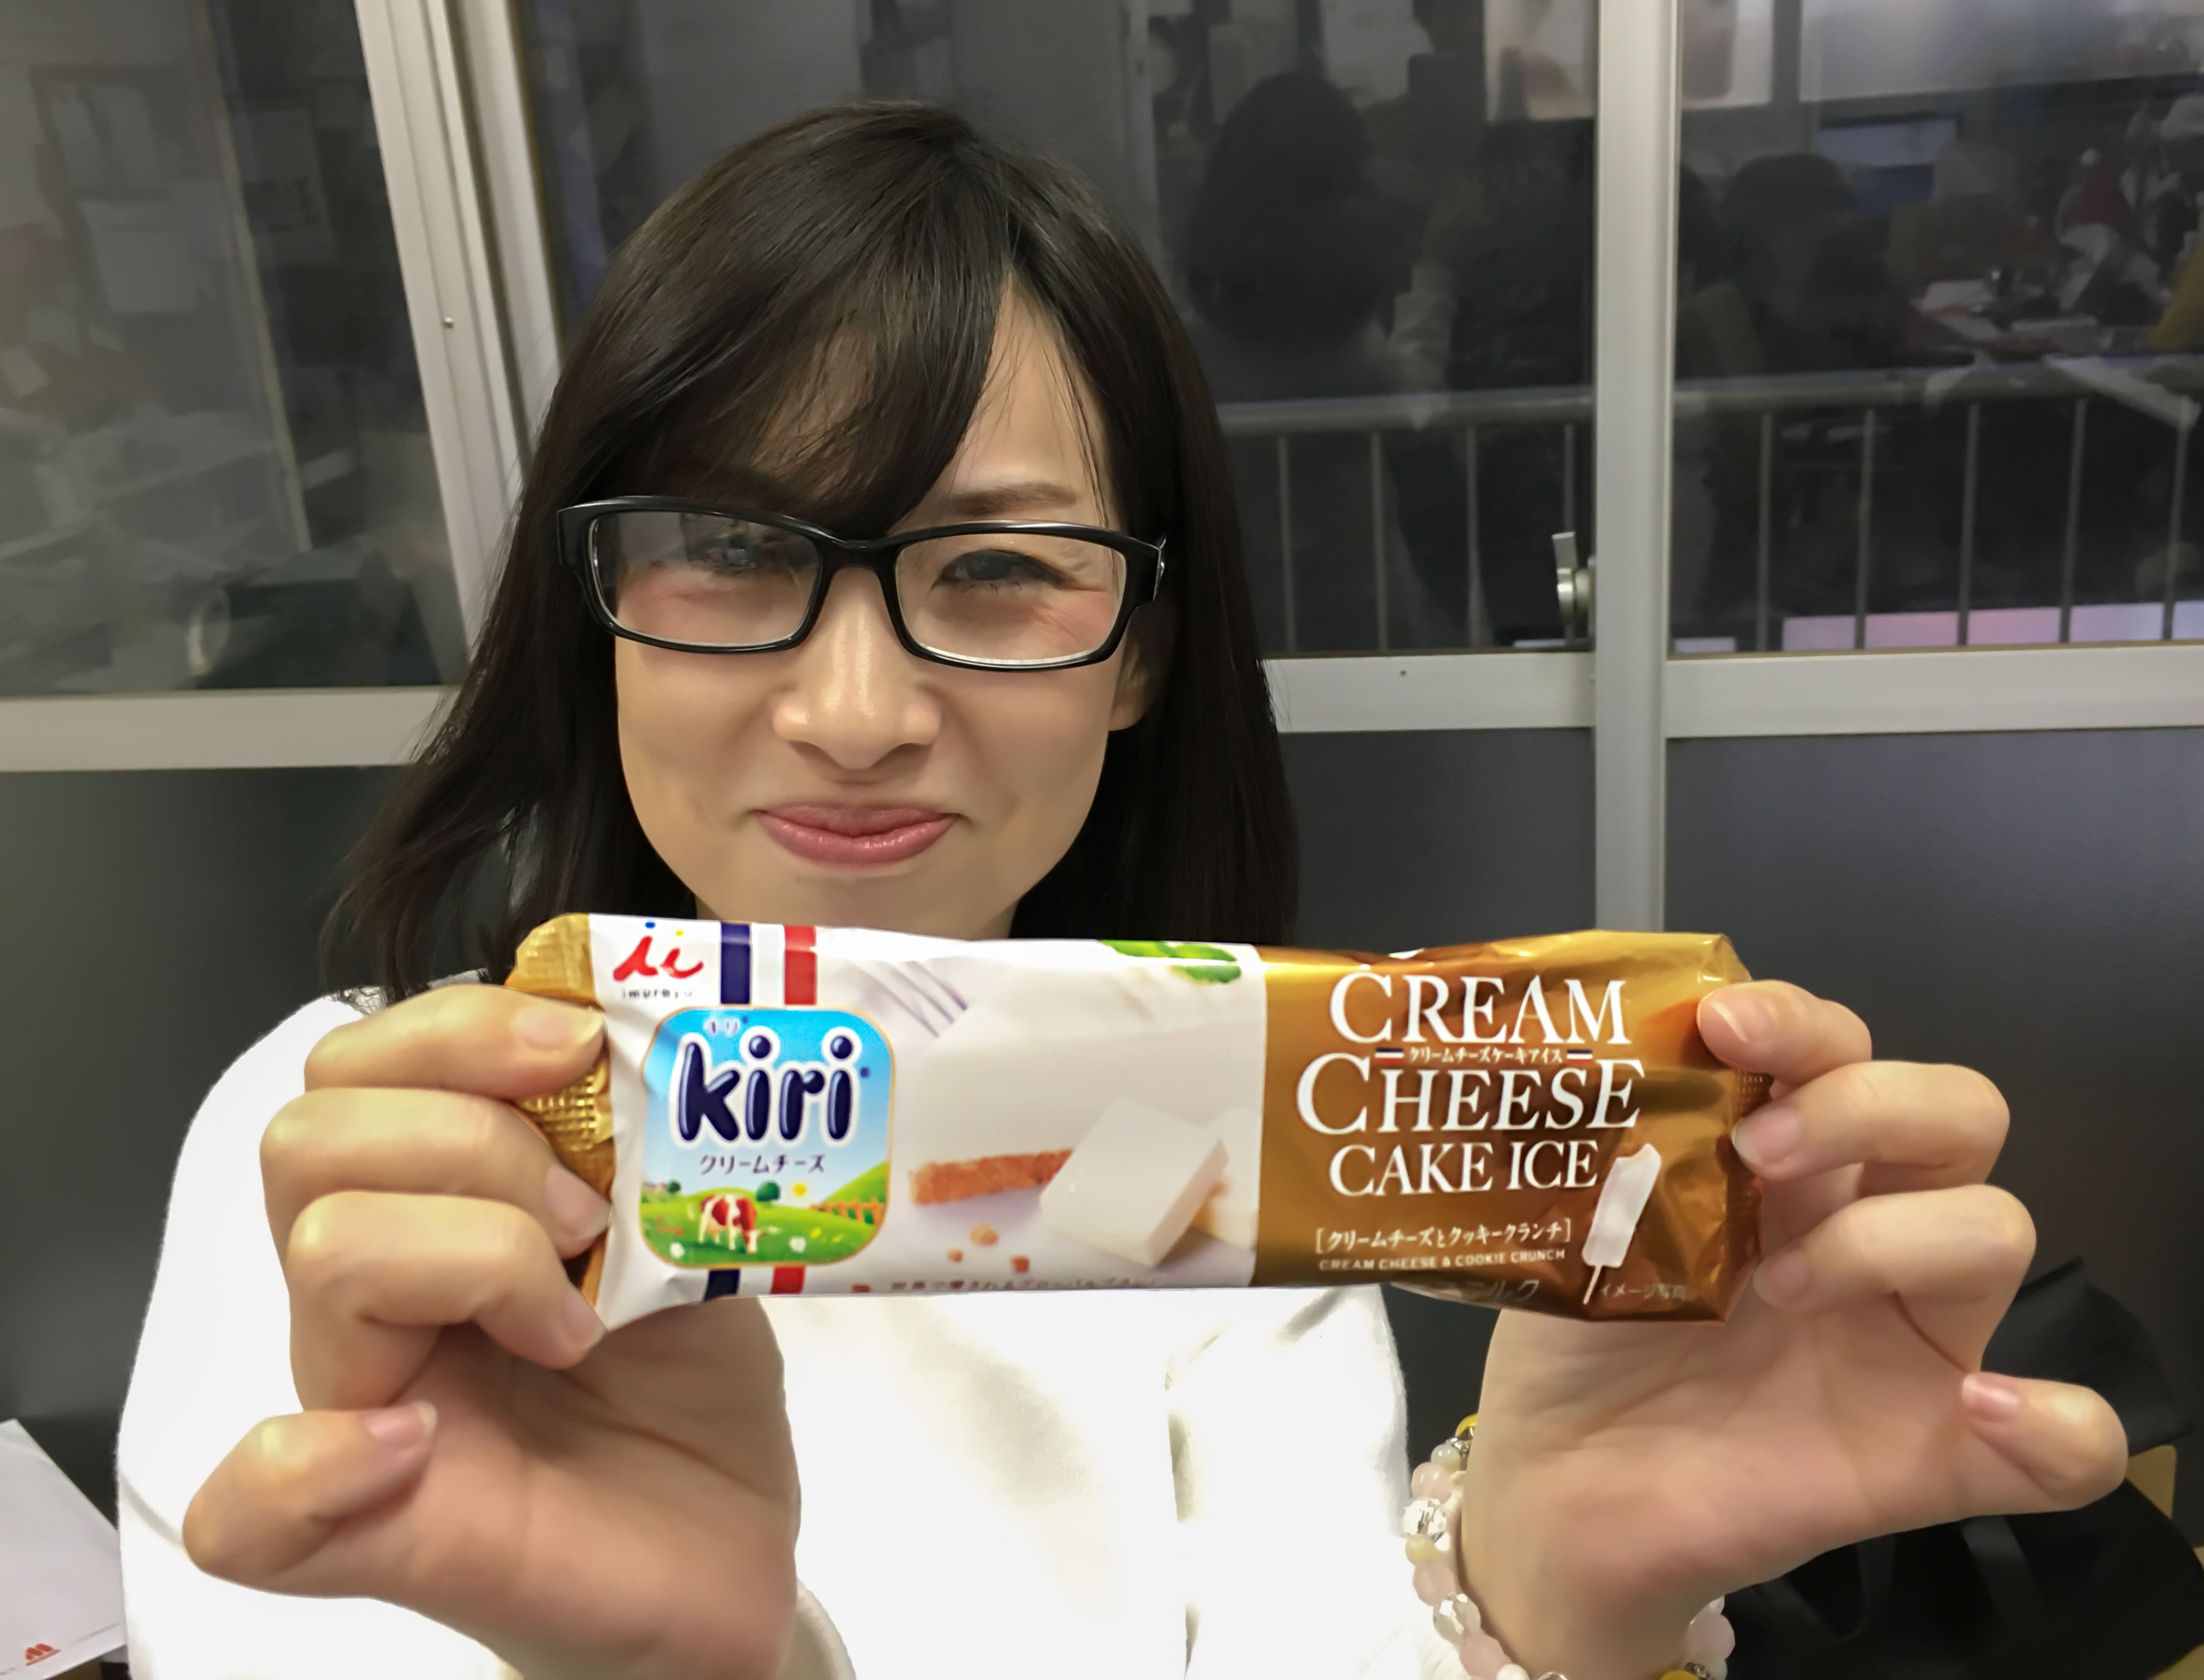 ウマすぎ注意 井村屋 Kiriの神アイス再び 新作 クリームチーズケーキアイス がさりげなく発売したので食べてみた やっぱ神うめえええええッ ロケットニュース24